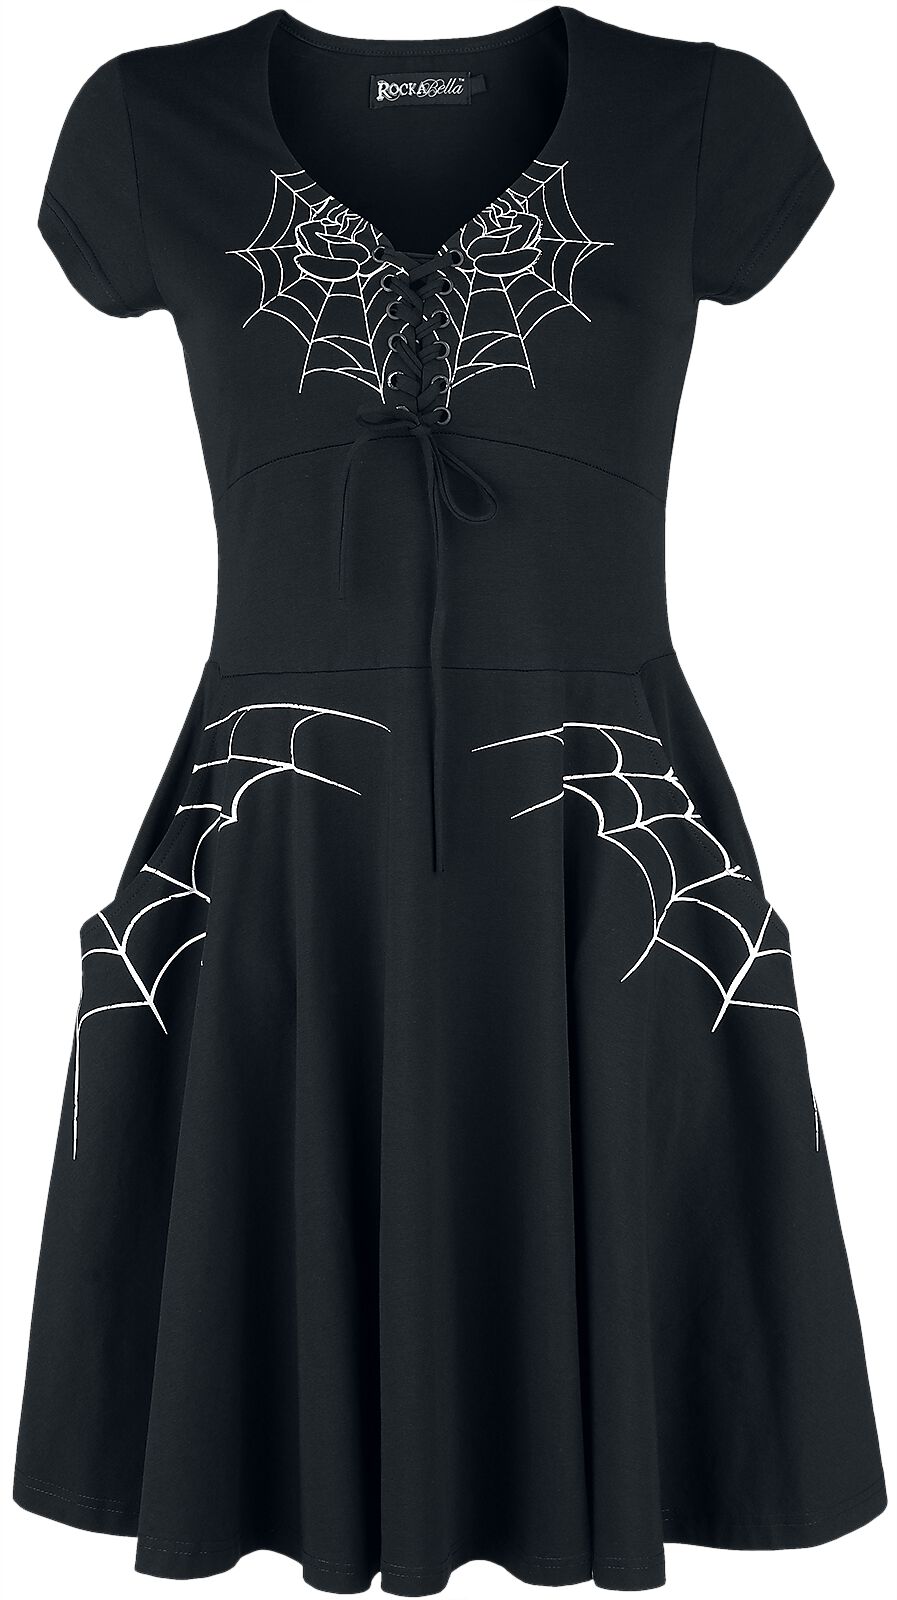 Rockabella - Gothic Kurzes Kleid - Black Widow Dress - S bis 4XL - für Damen - Größe 4XL - schwarz/weiß